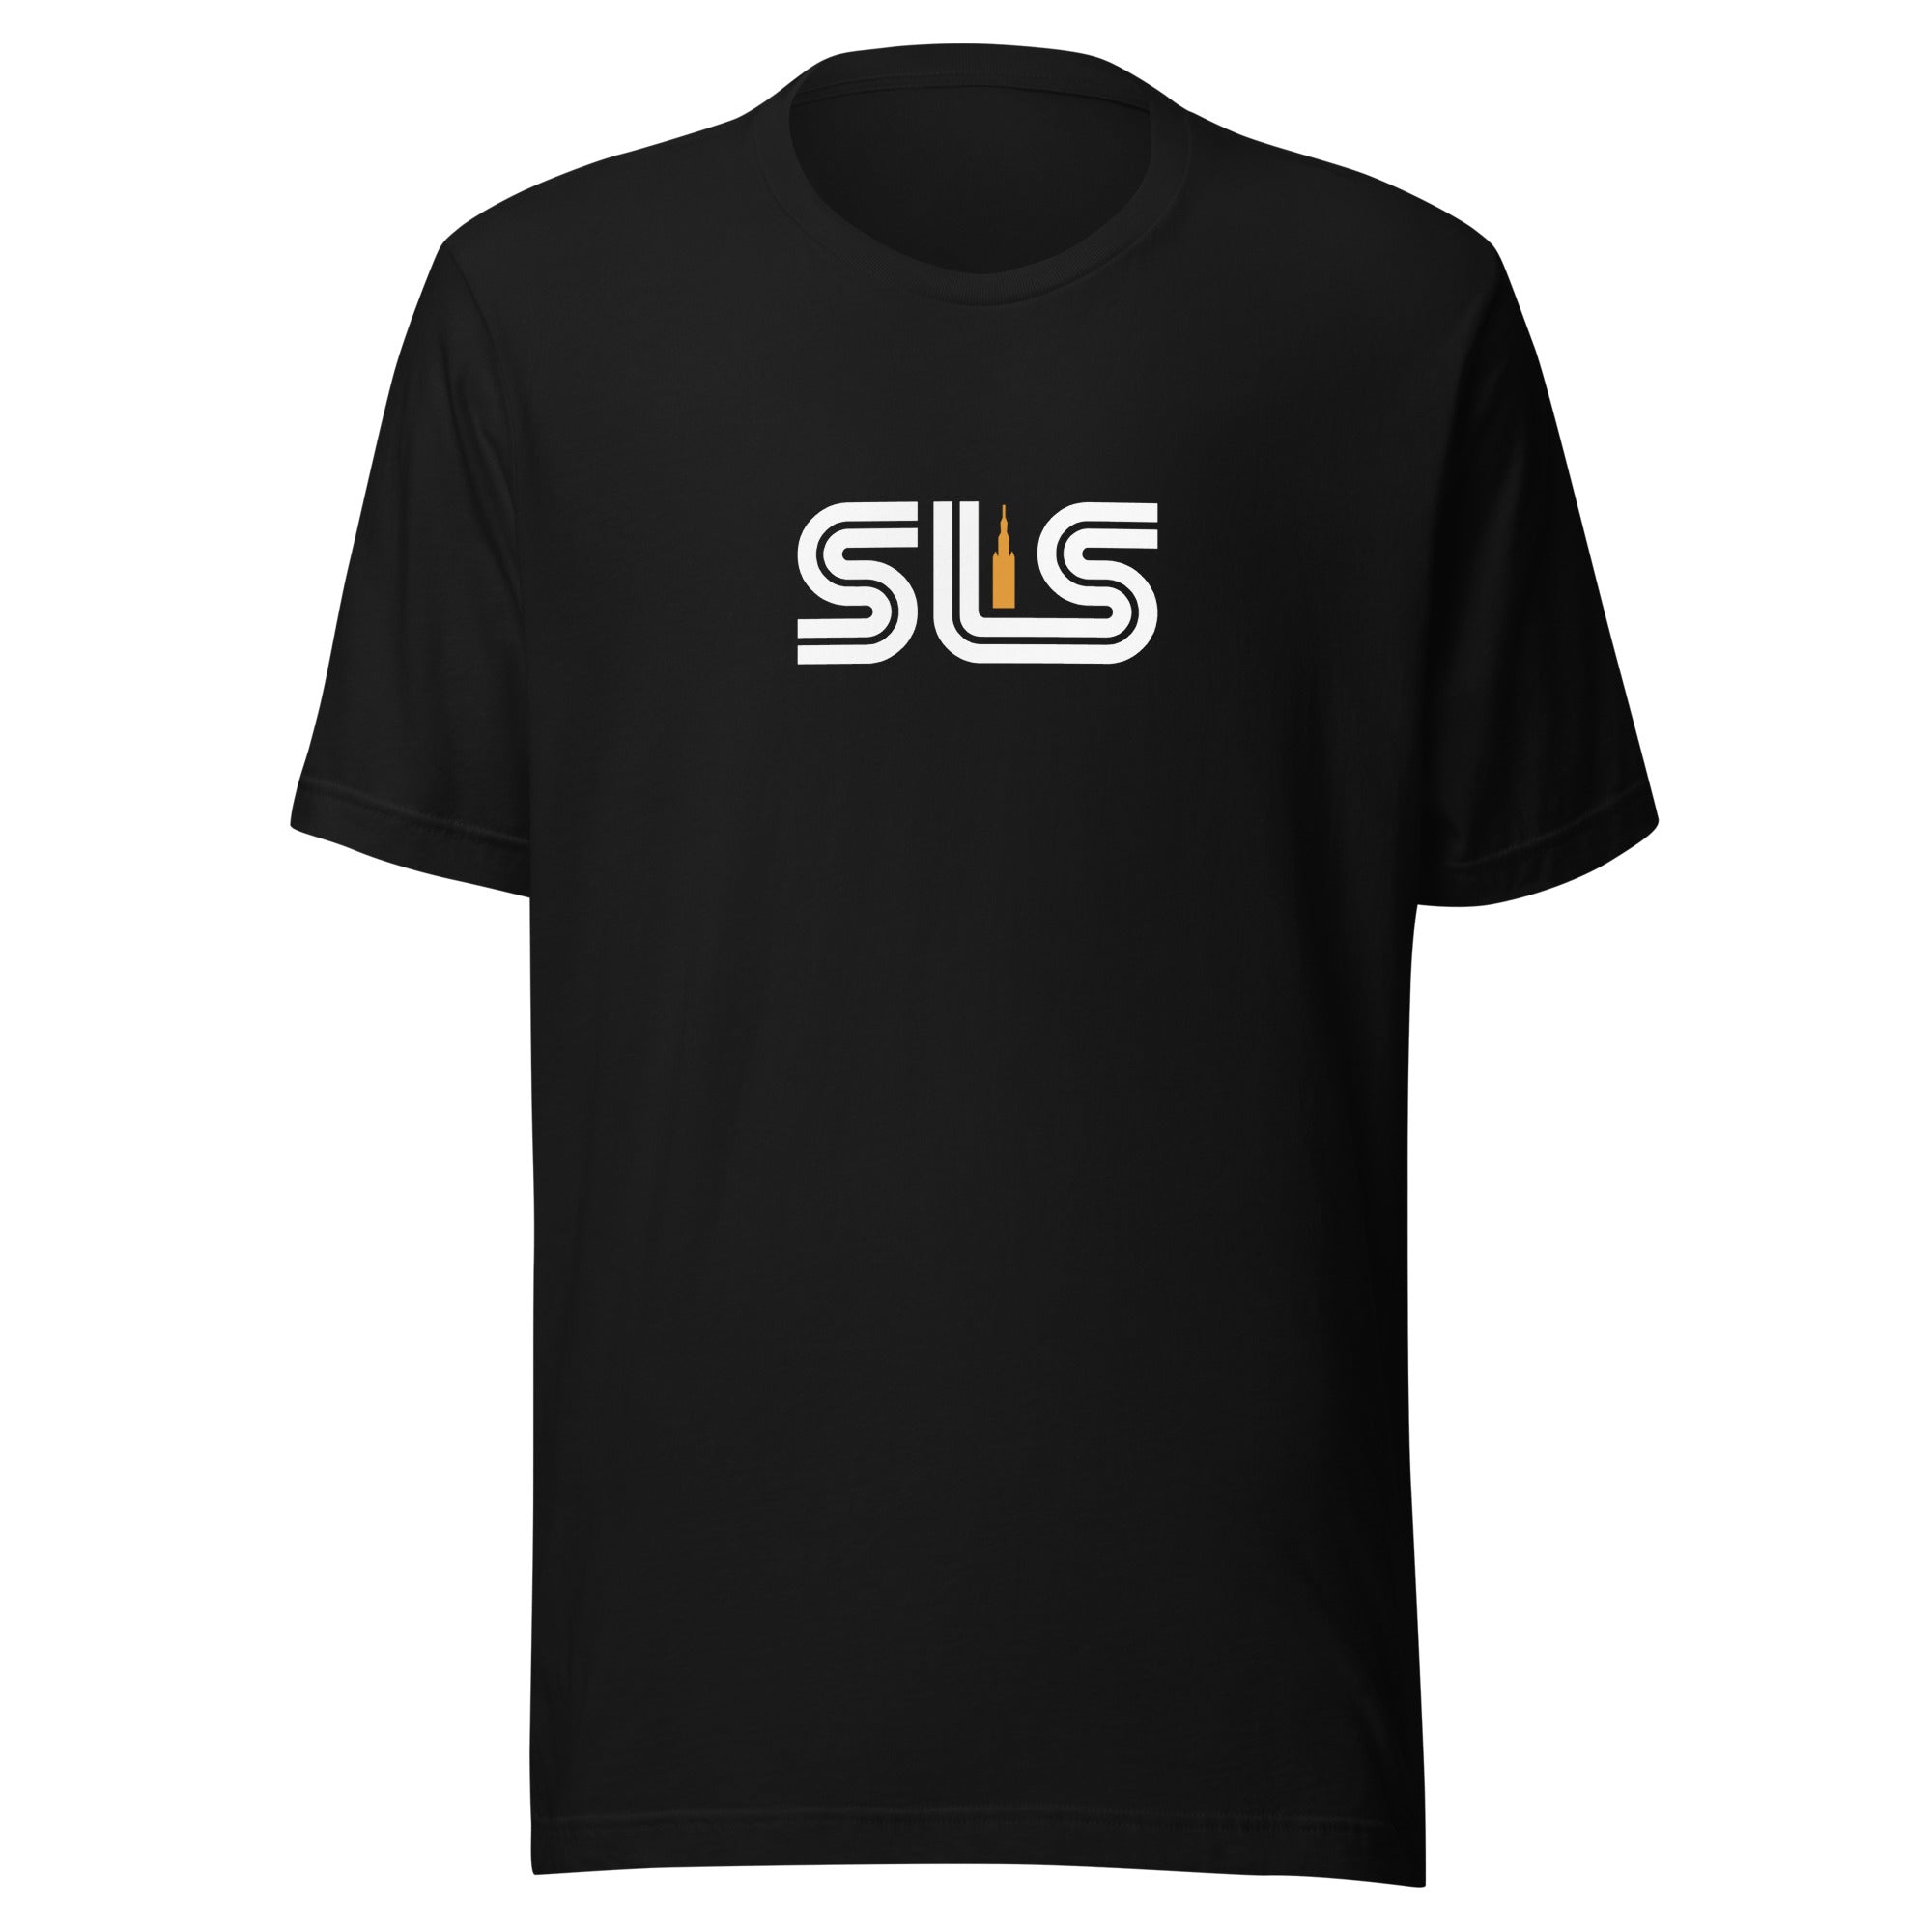 SLS - Unisex T-shirt